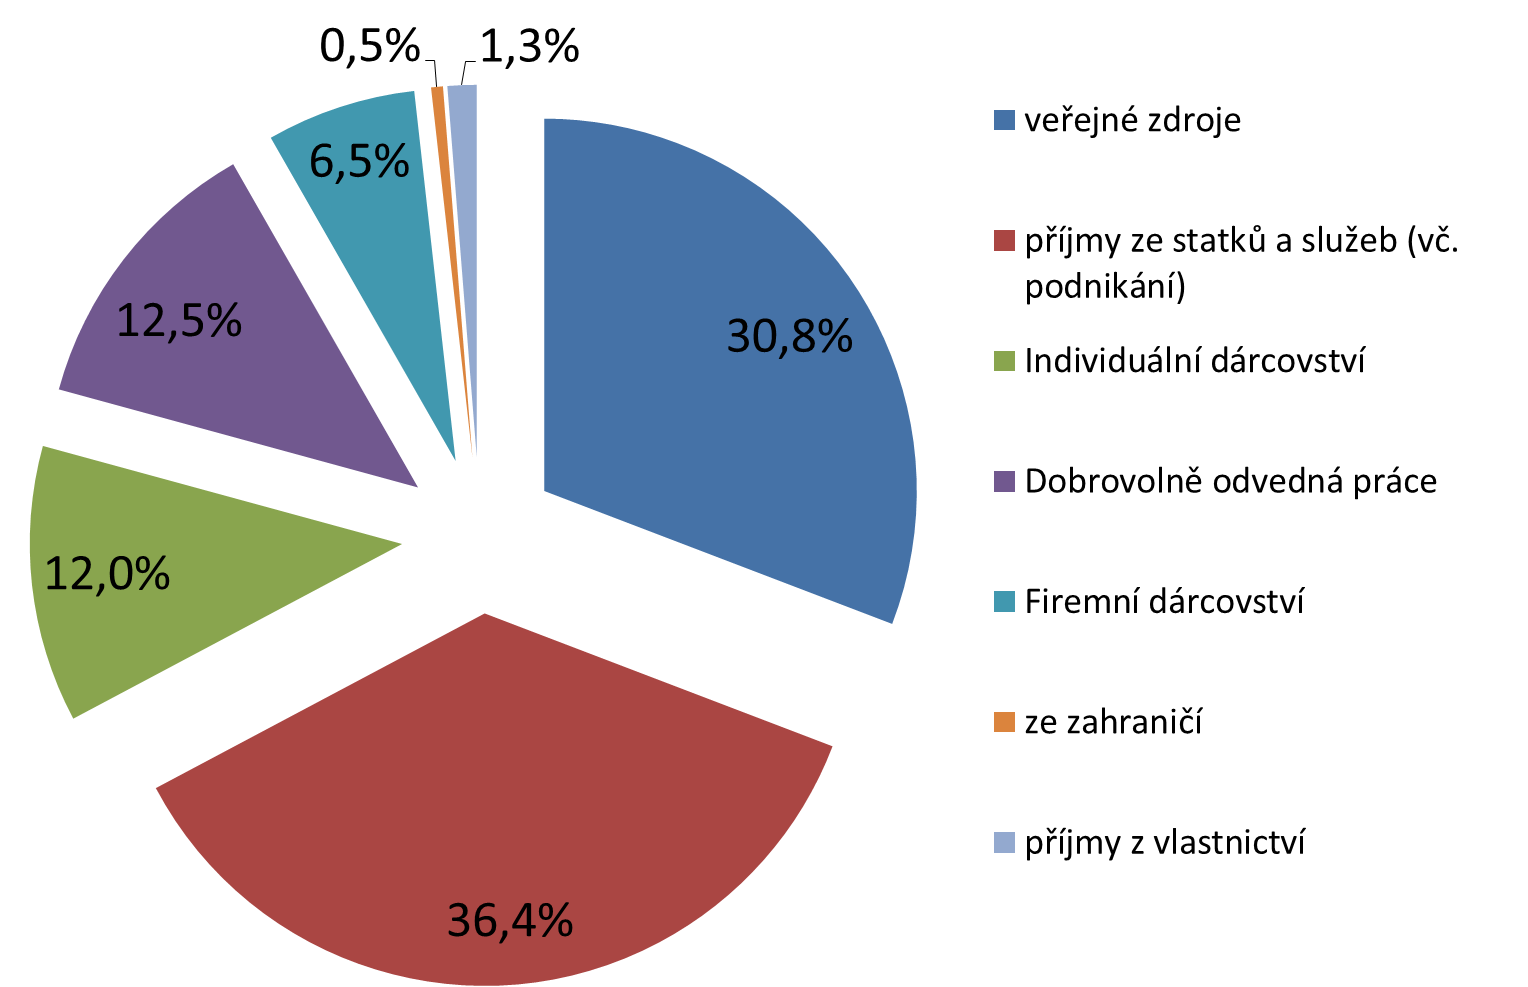 ZDROJE NISD V ČR 2011 (V %) ČESKÝ STATISTICKÝ